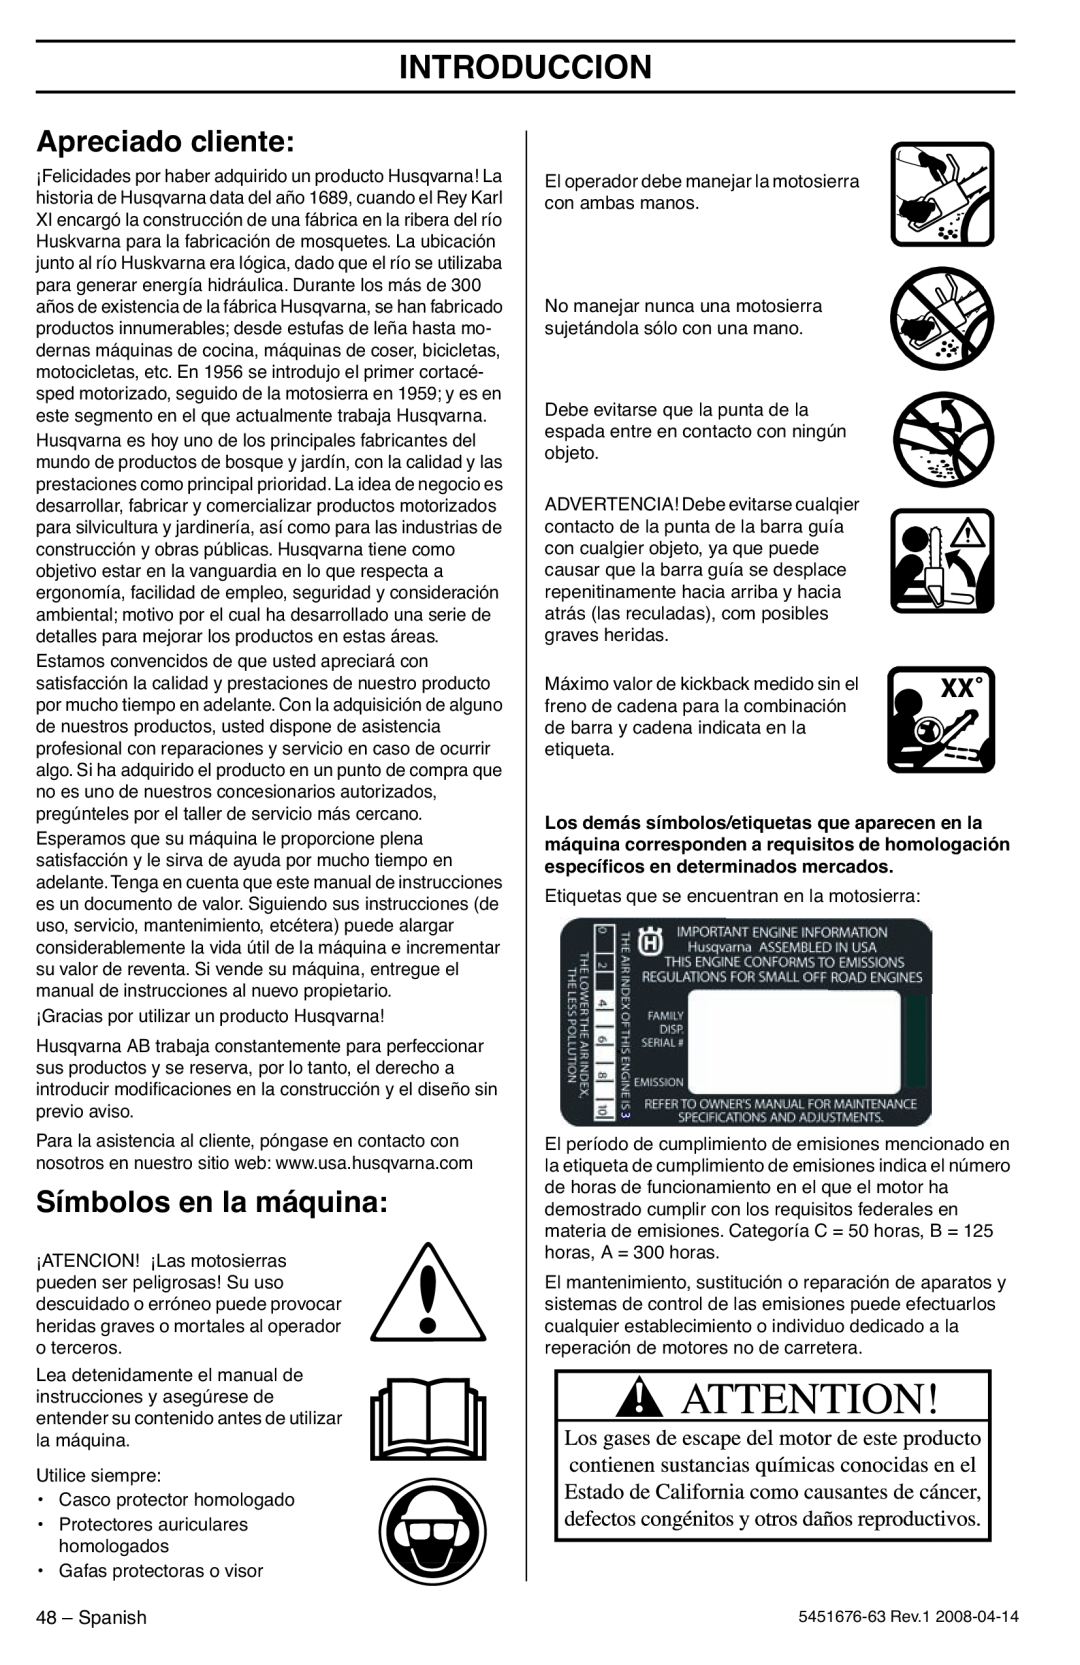 Husqvarna 235e, 240e manuel dutilisation Introduccion, Apreciado cliente, Símbolos en la máquina 